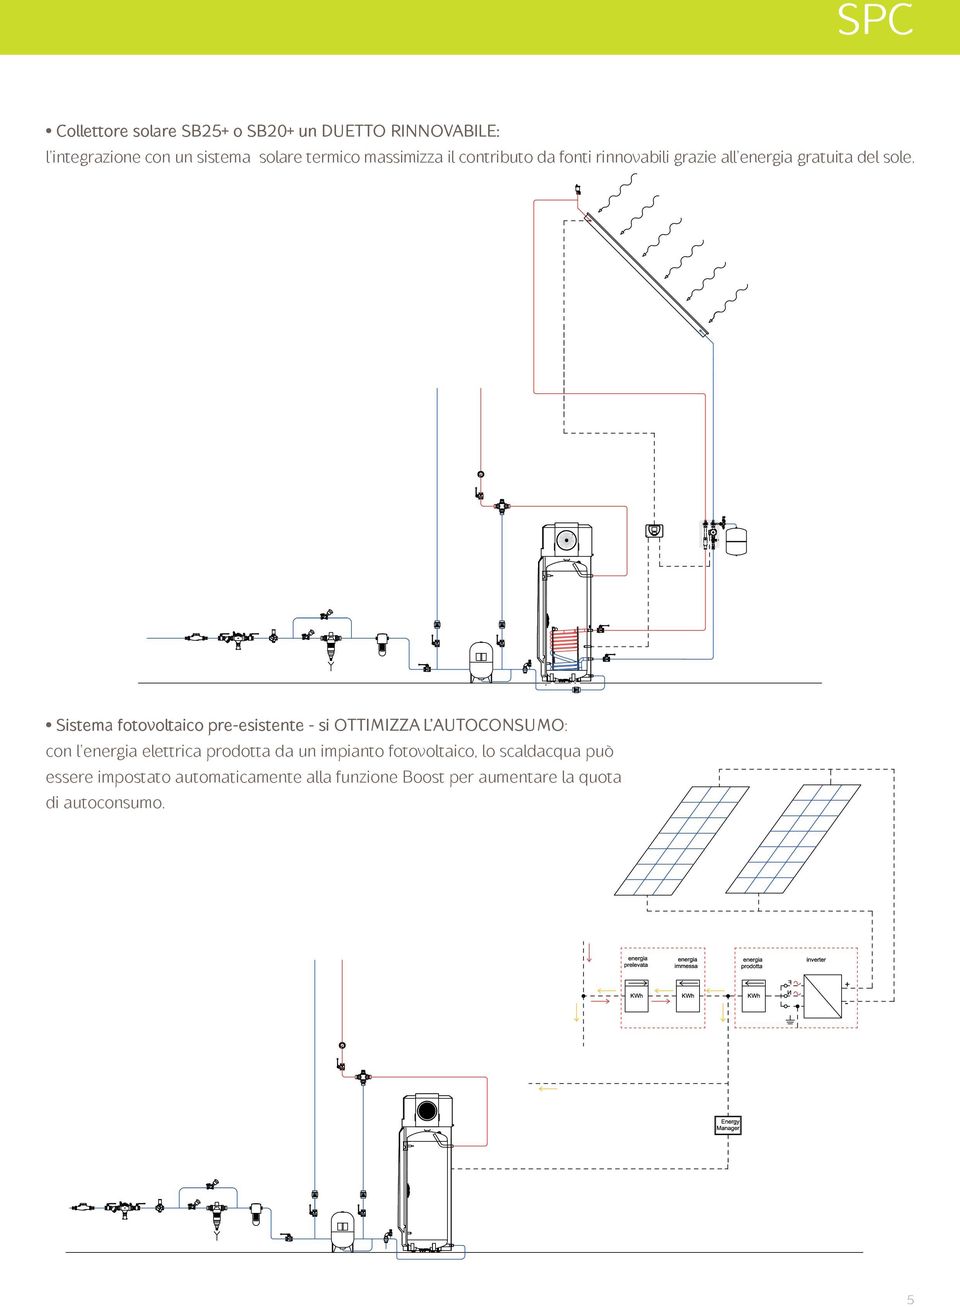 Sistema fotovoltaico pre-esistente - si OTTIMIZZA L AUTOCONSUMO: con l energia elettrica prodotta da un